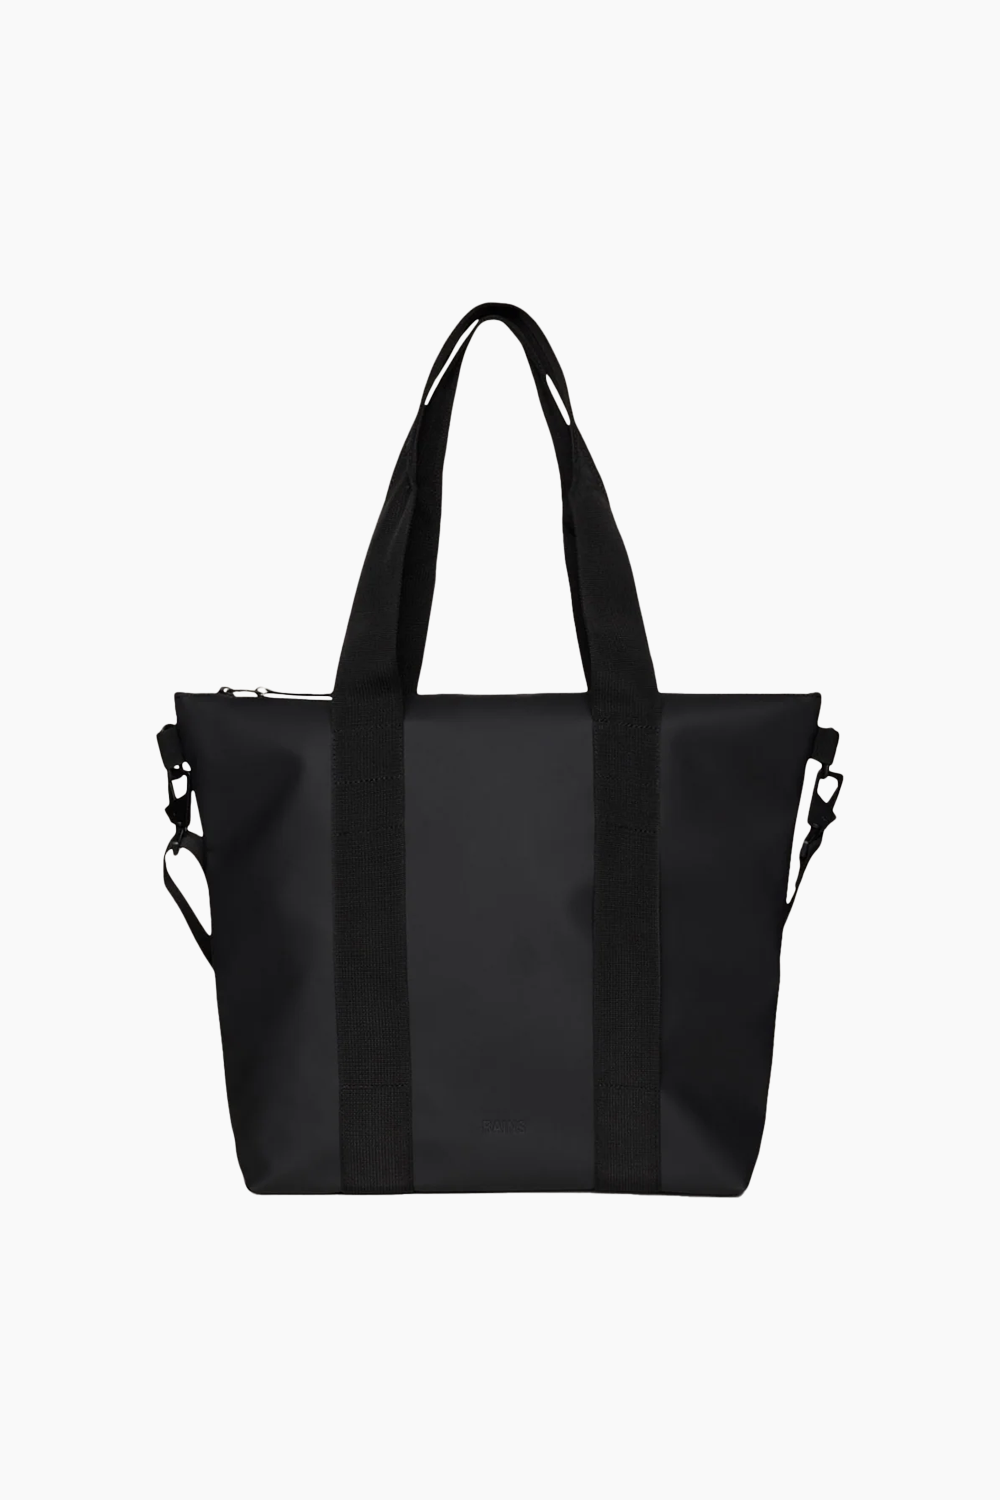 Billede af Tote Bag Mini W3 - Black - Rains - Sort One Size